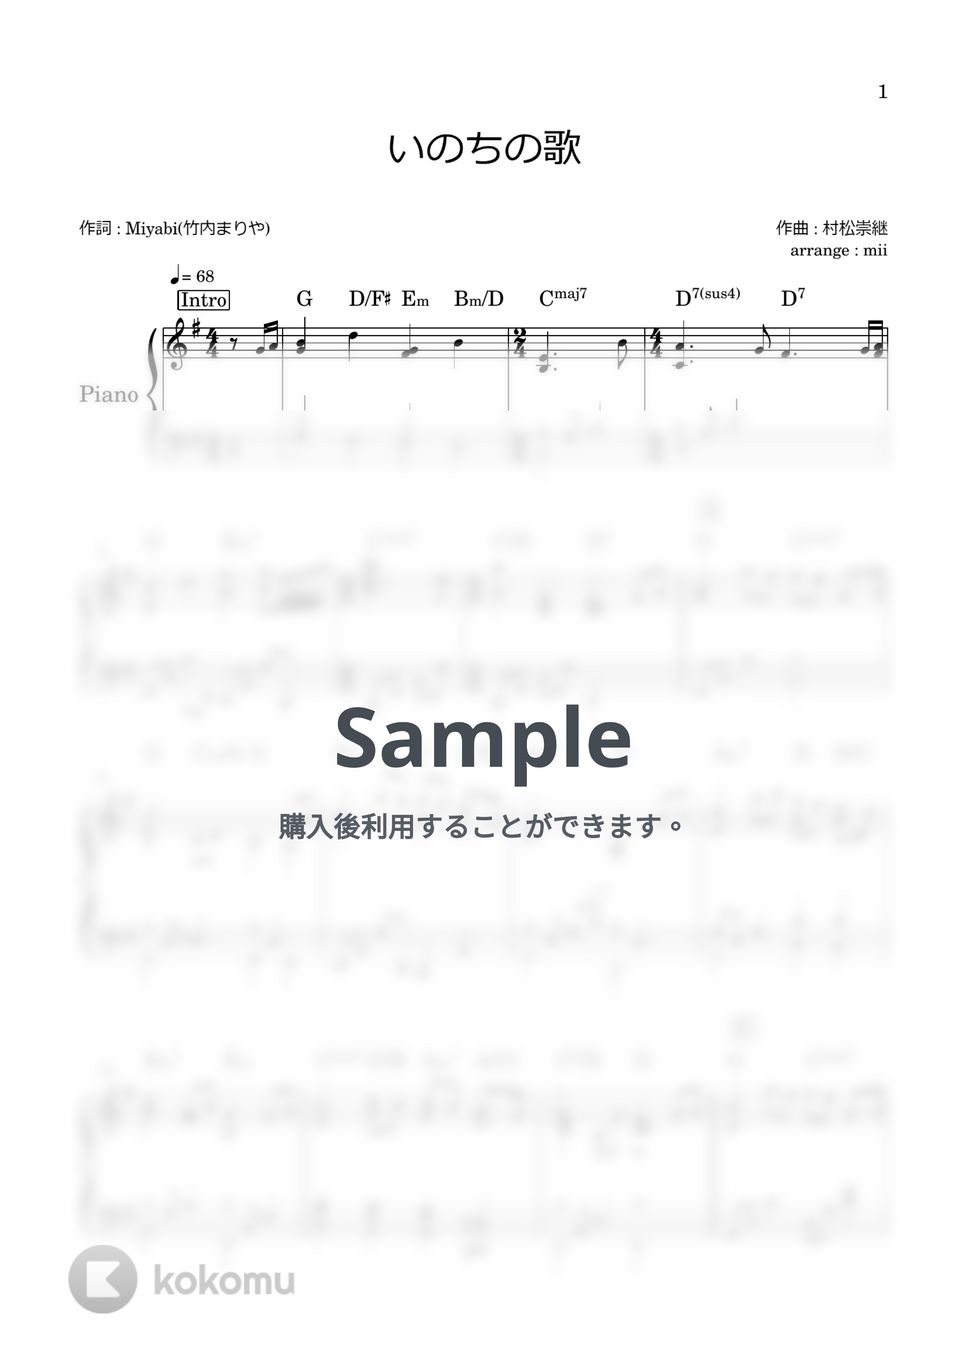 竹内まりあ - いのちの歌 by miiの楽譜棚